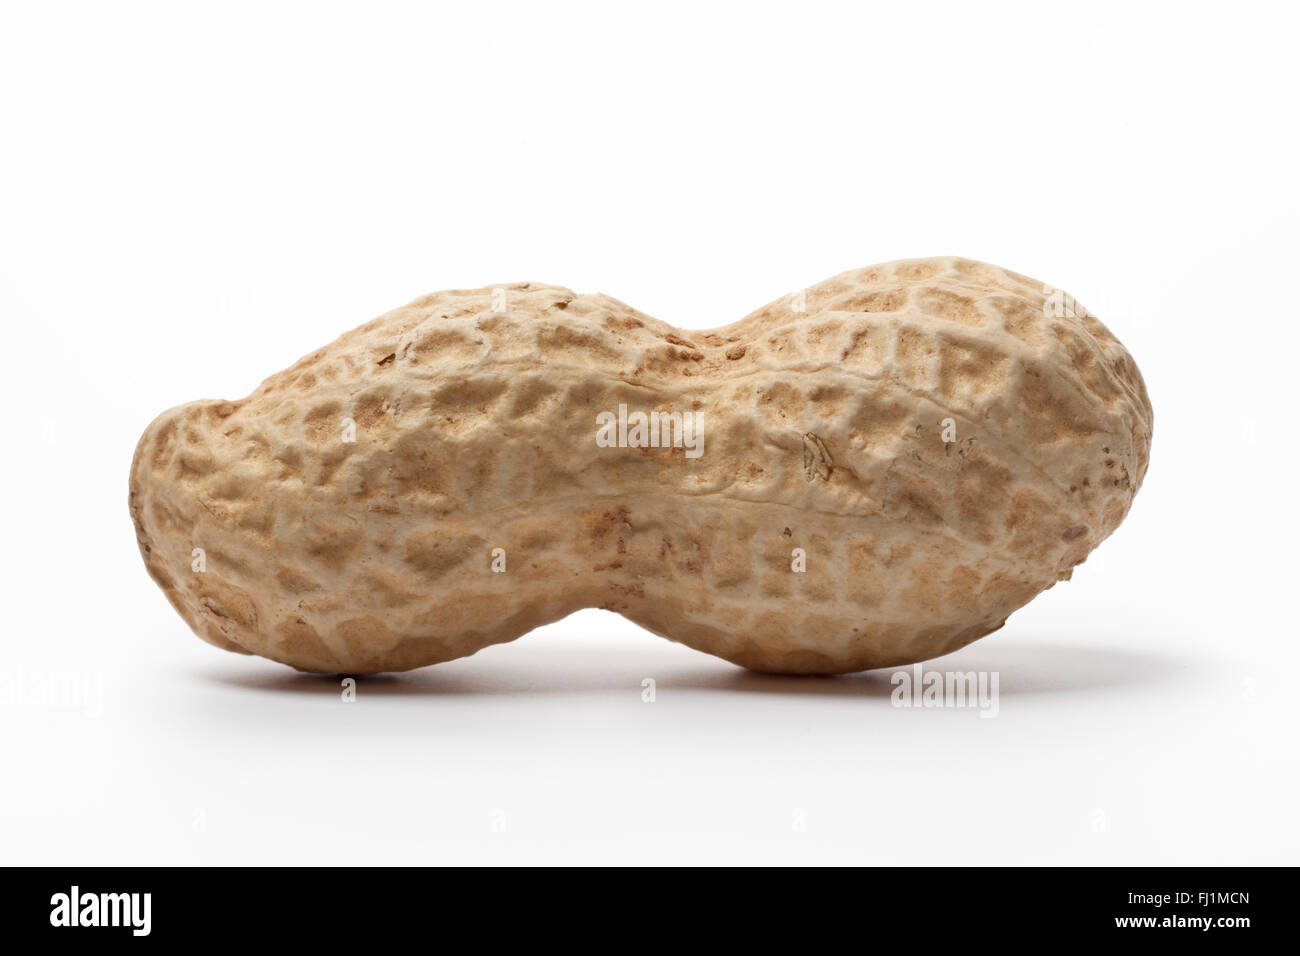 Whole single Peanut on white background Stock Photo